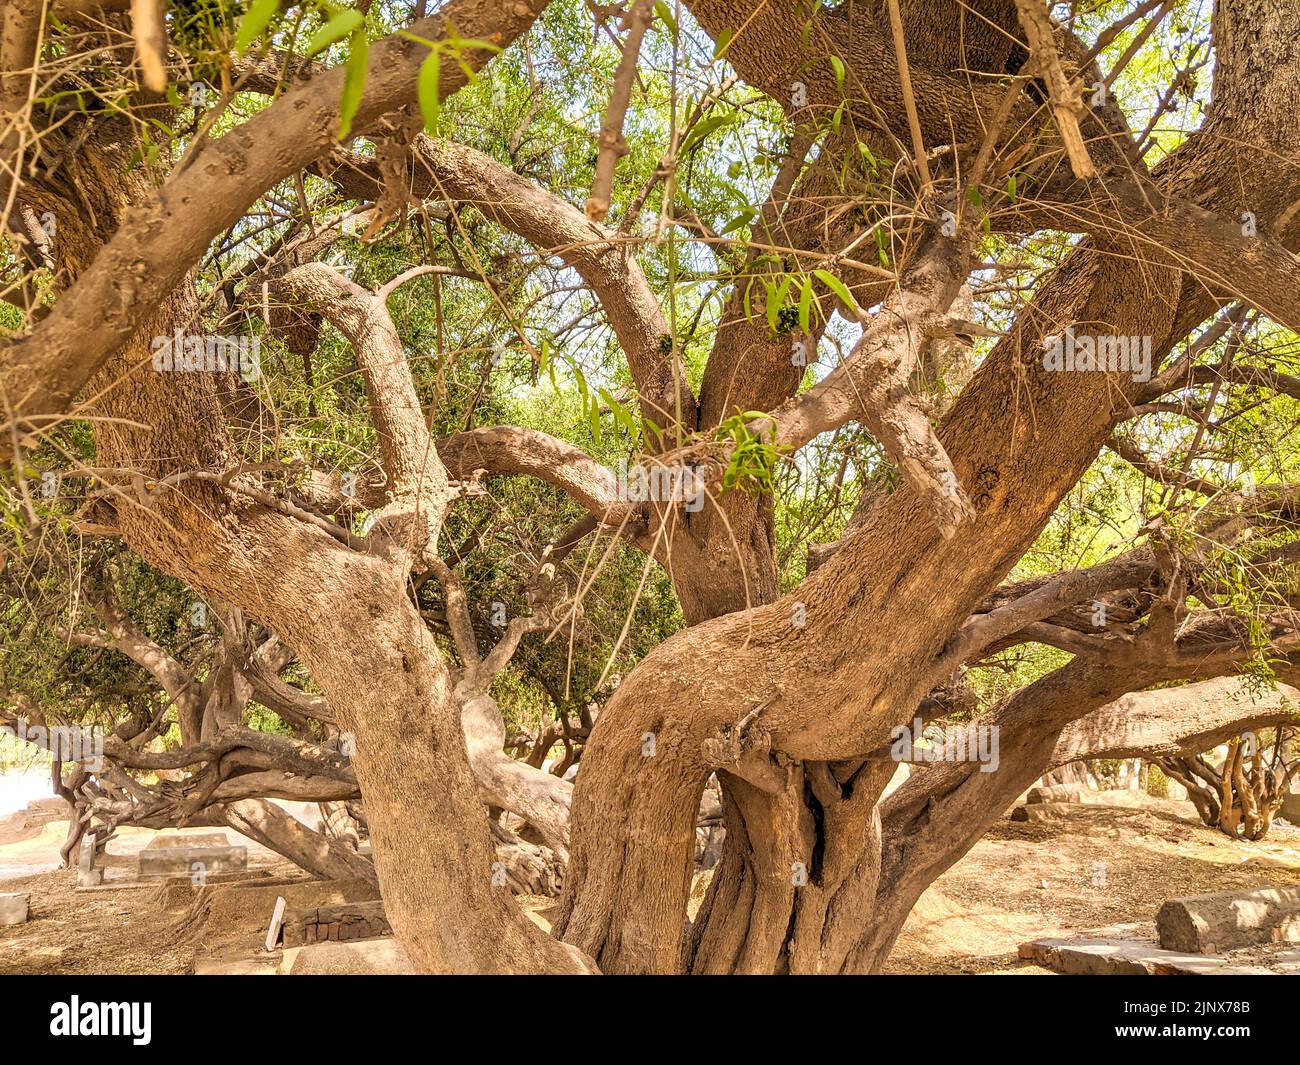 Salvadora persica anche conosciuto come Peelu albero nel deserto Foto Stock